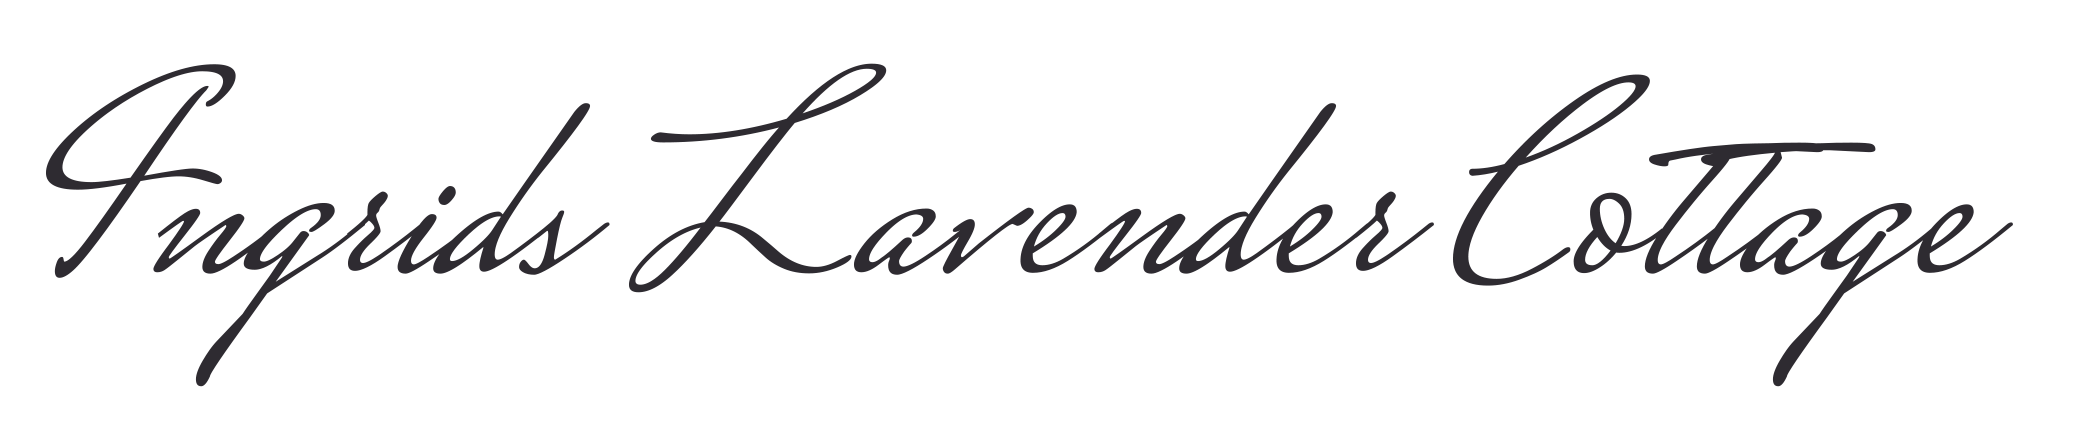 Ingrids Lavender Cottage Logo